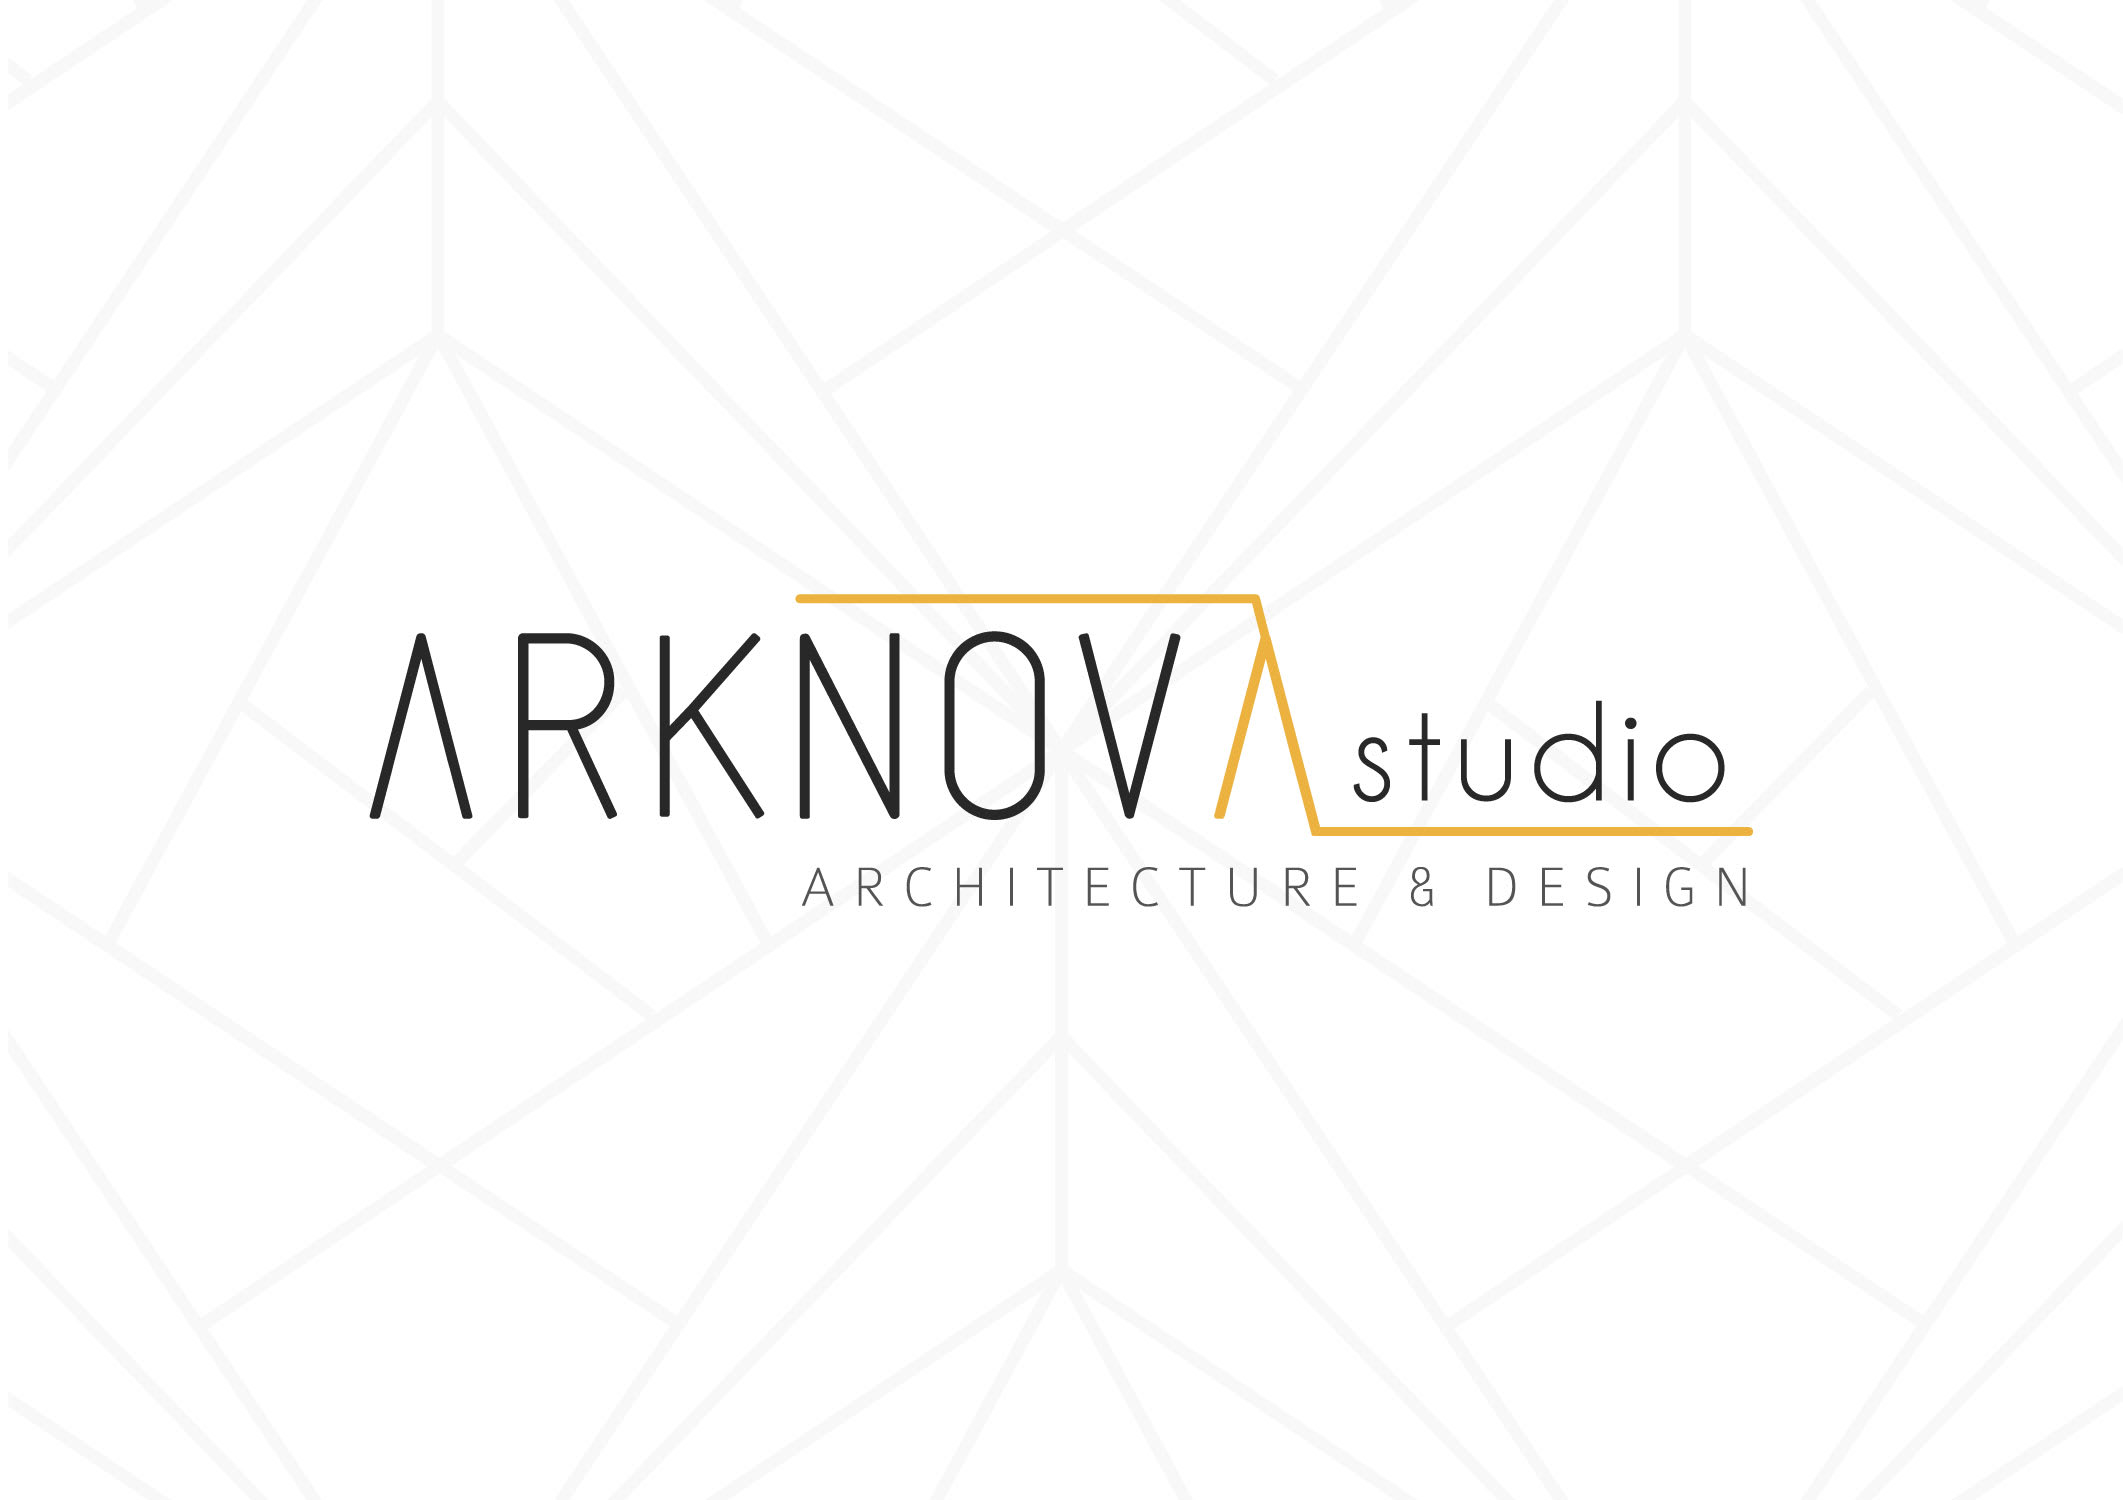 Arknova Studio